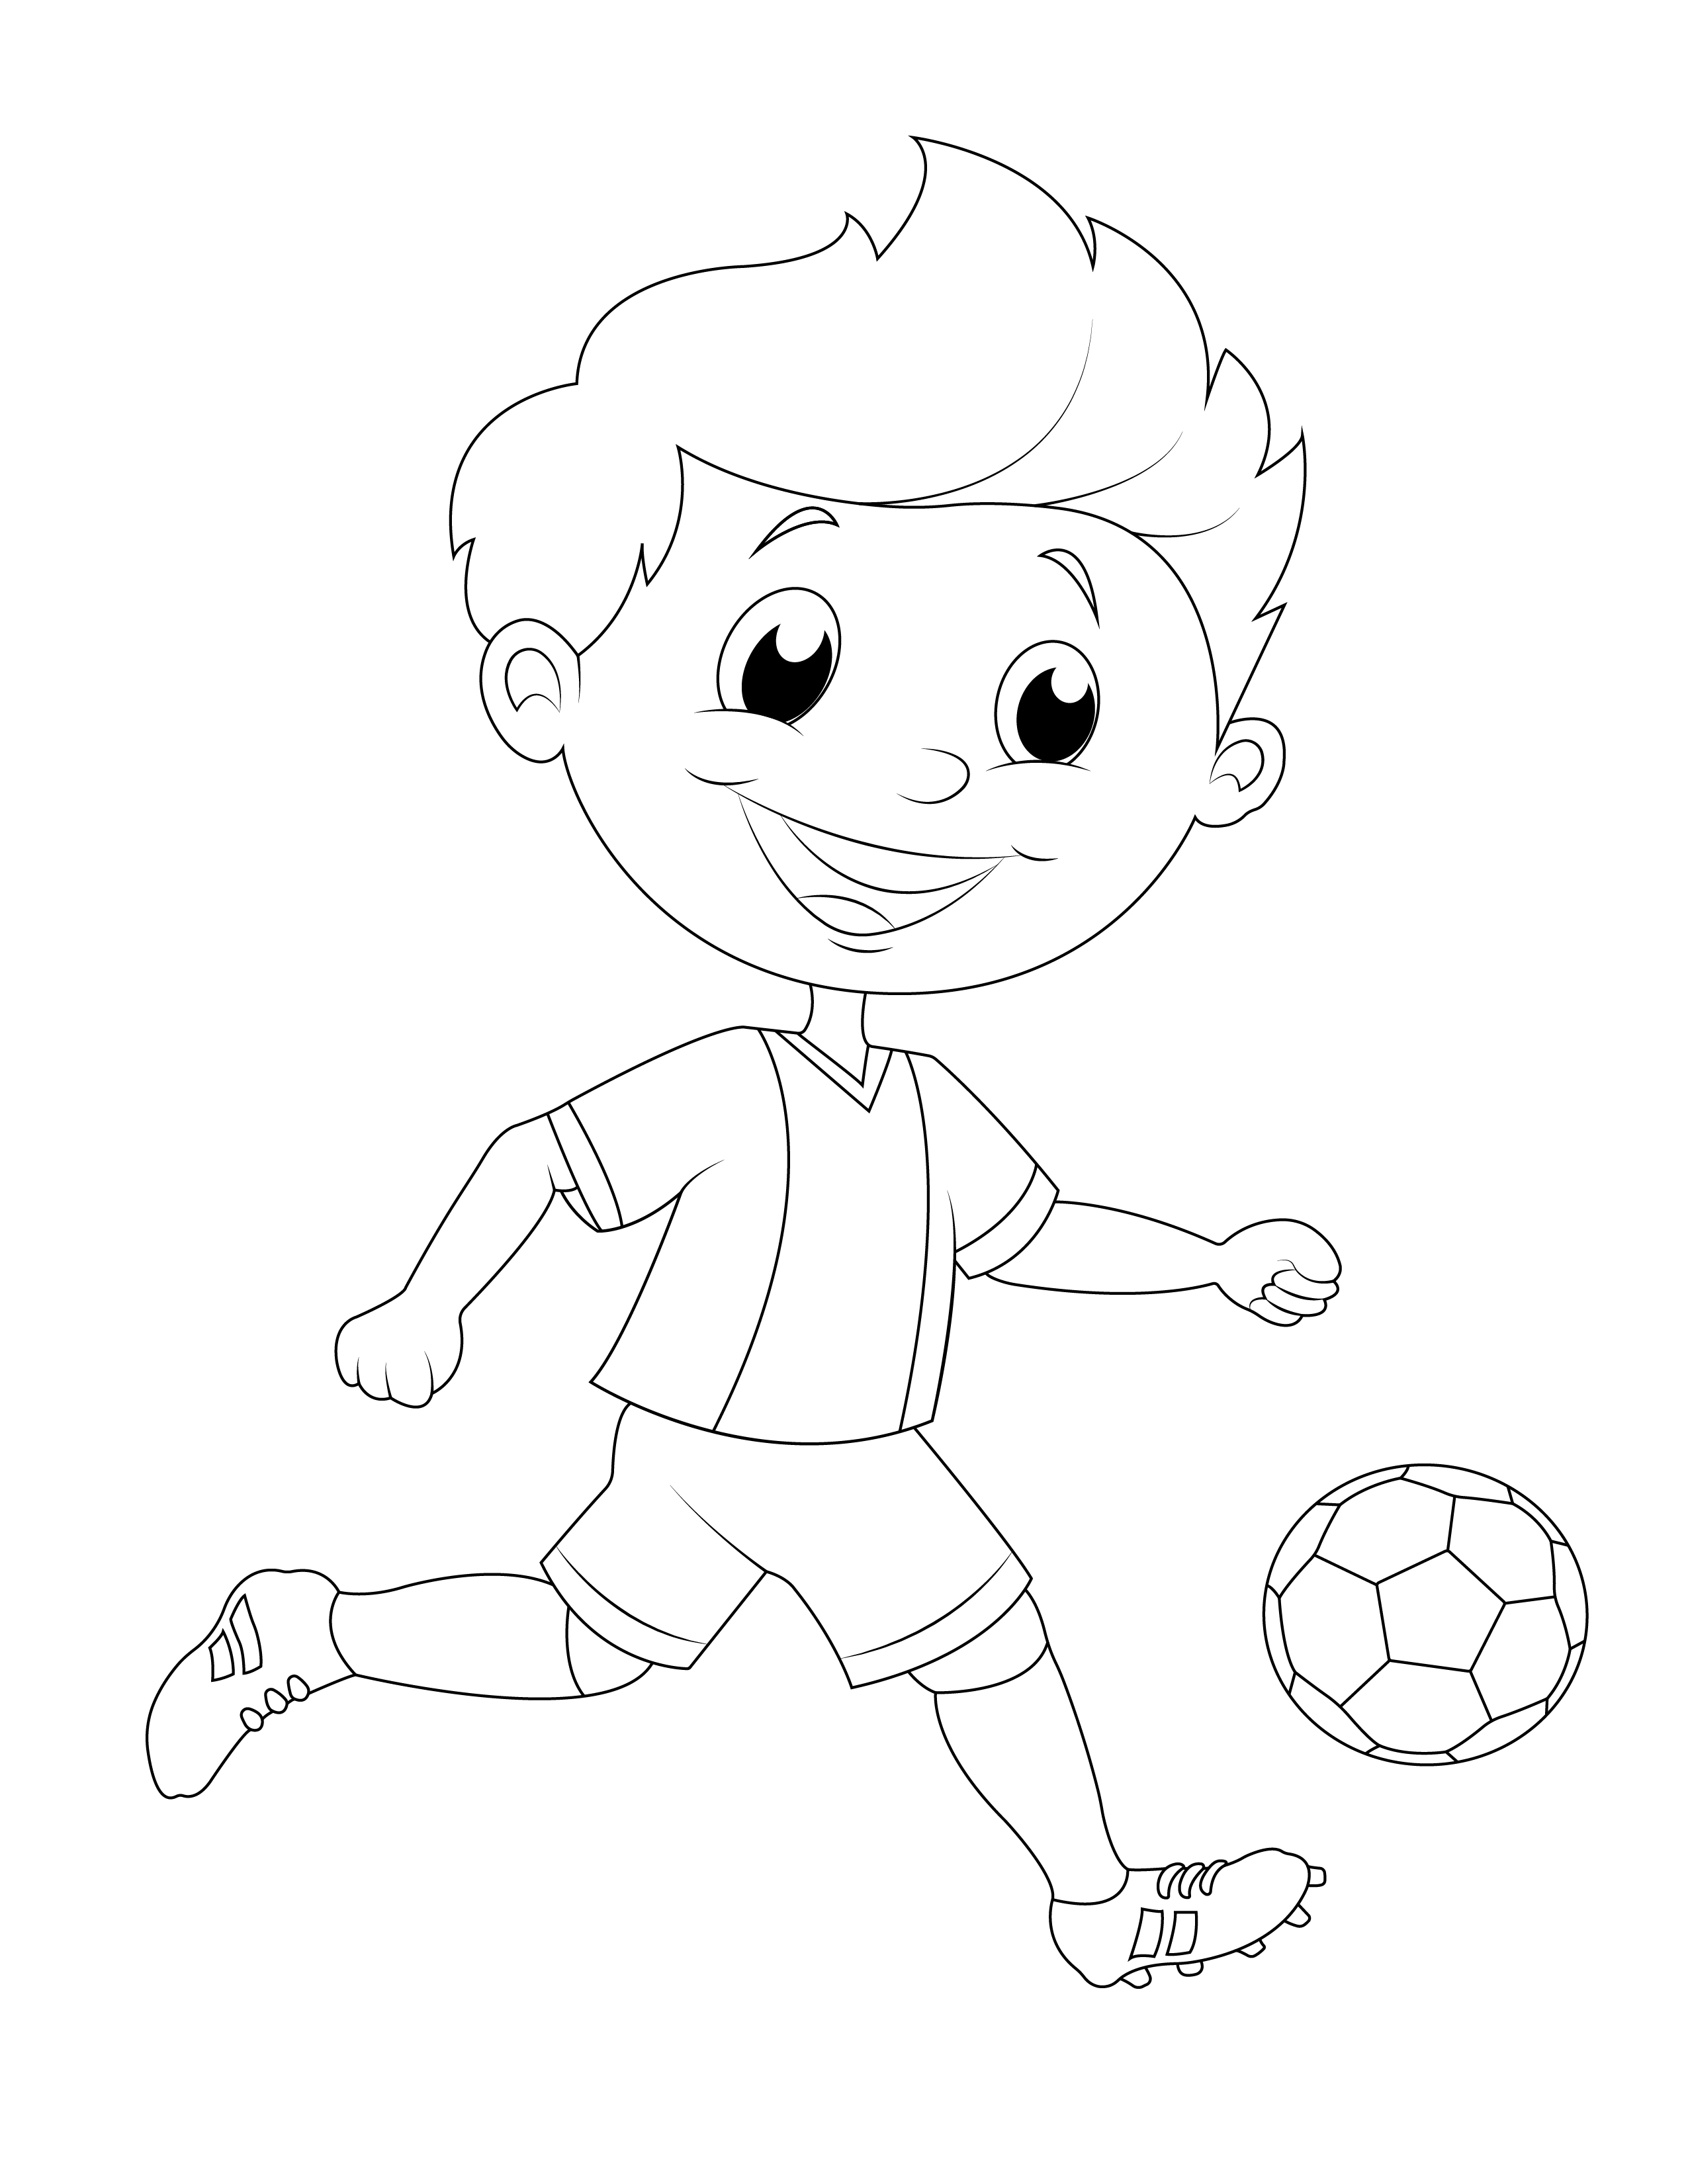 Målarbok av barn som spelar fotboll